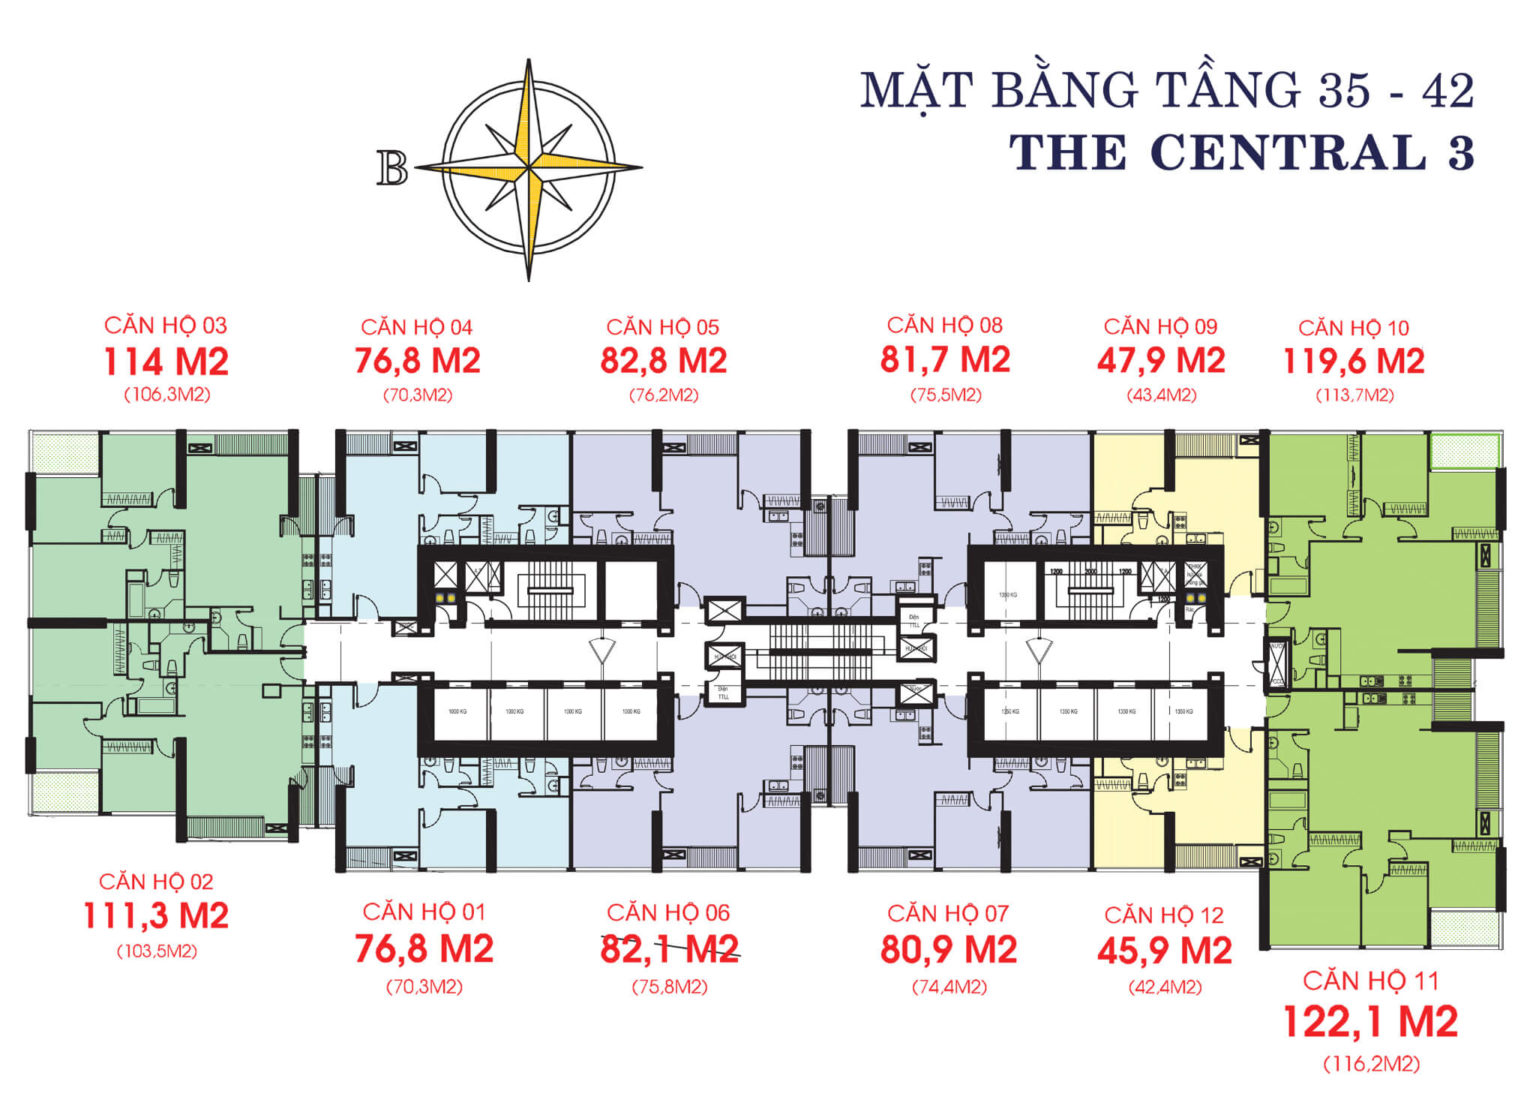 202301/01/08/211933-mat-bang-layout-central-c3-tang-35-42-1536x1094.jpg